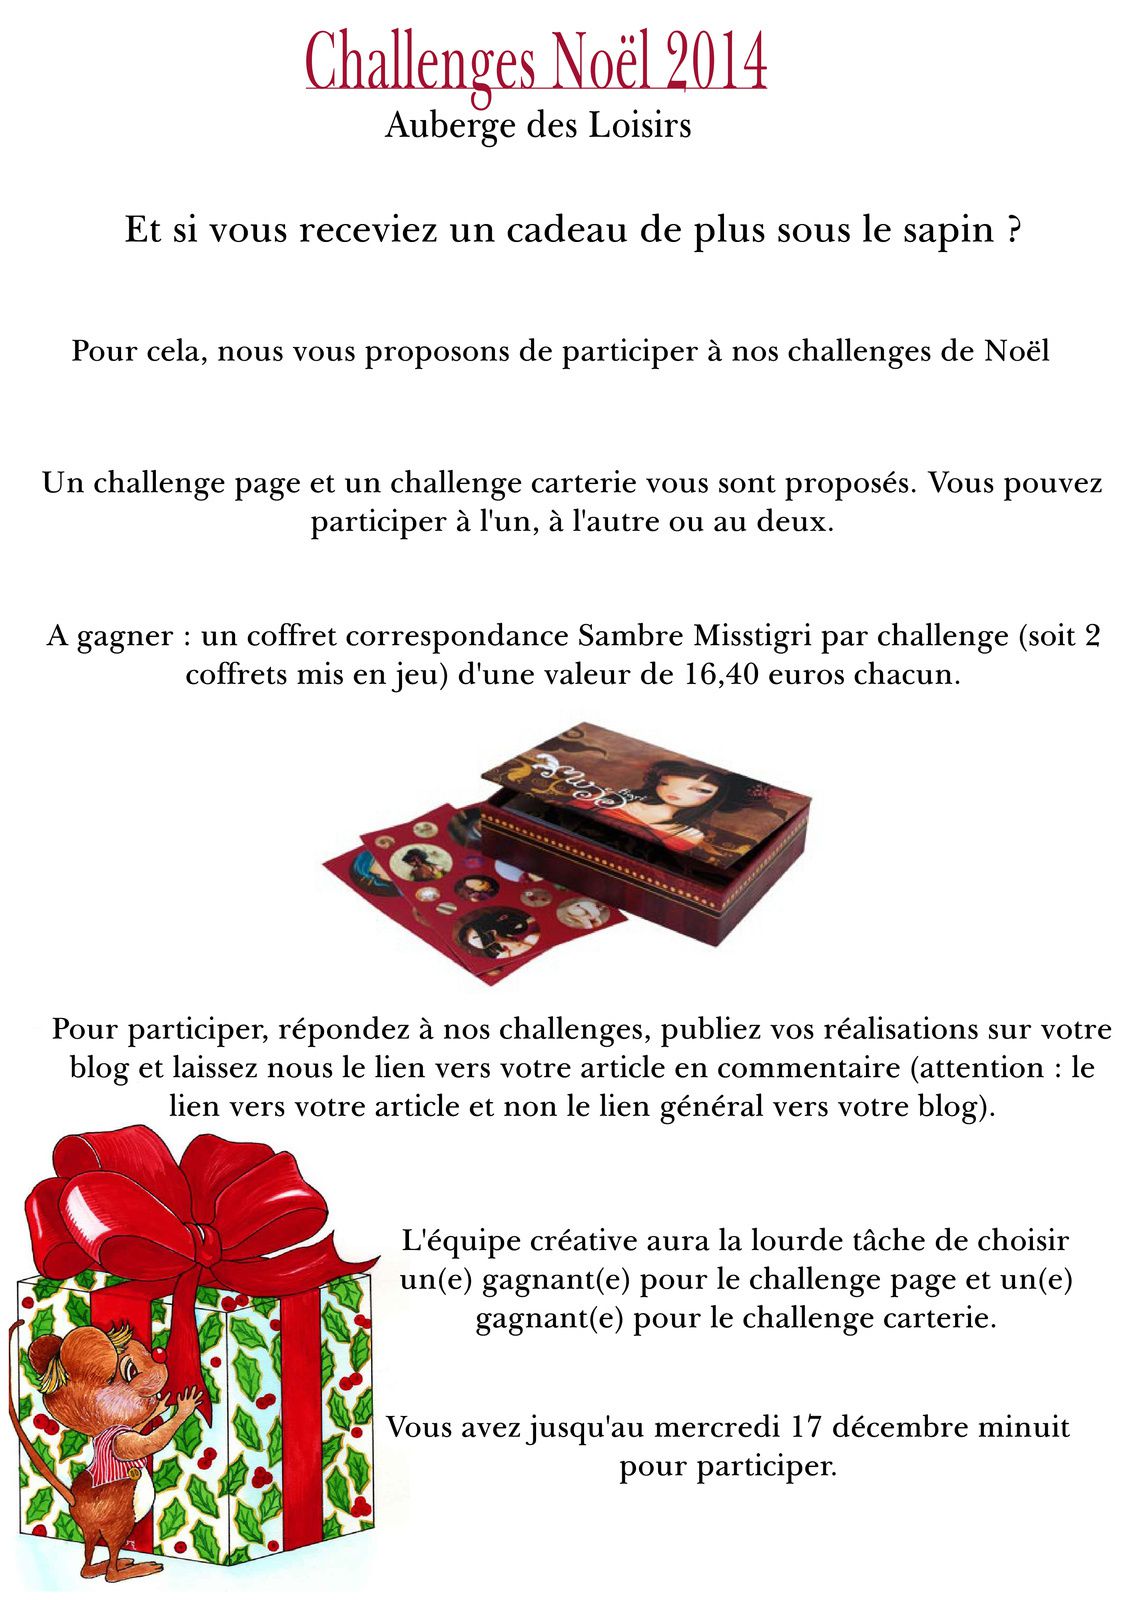 Challenges de Noël chez Auberge des Loisirs !!! - Stefsav-enmodescrap